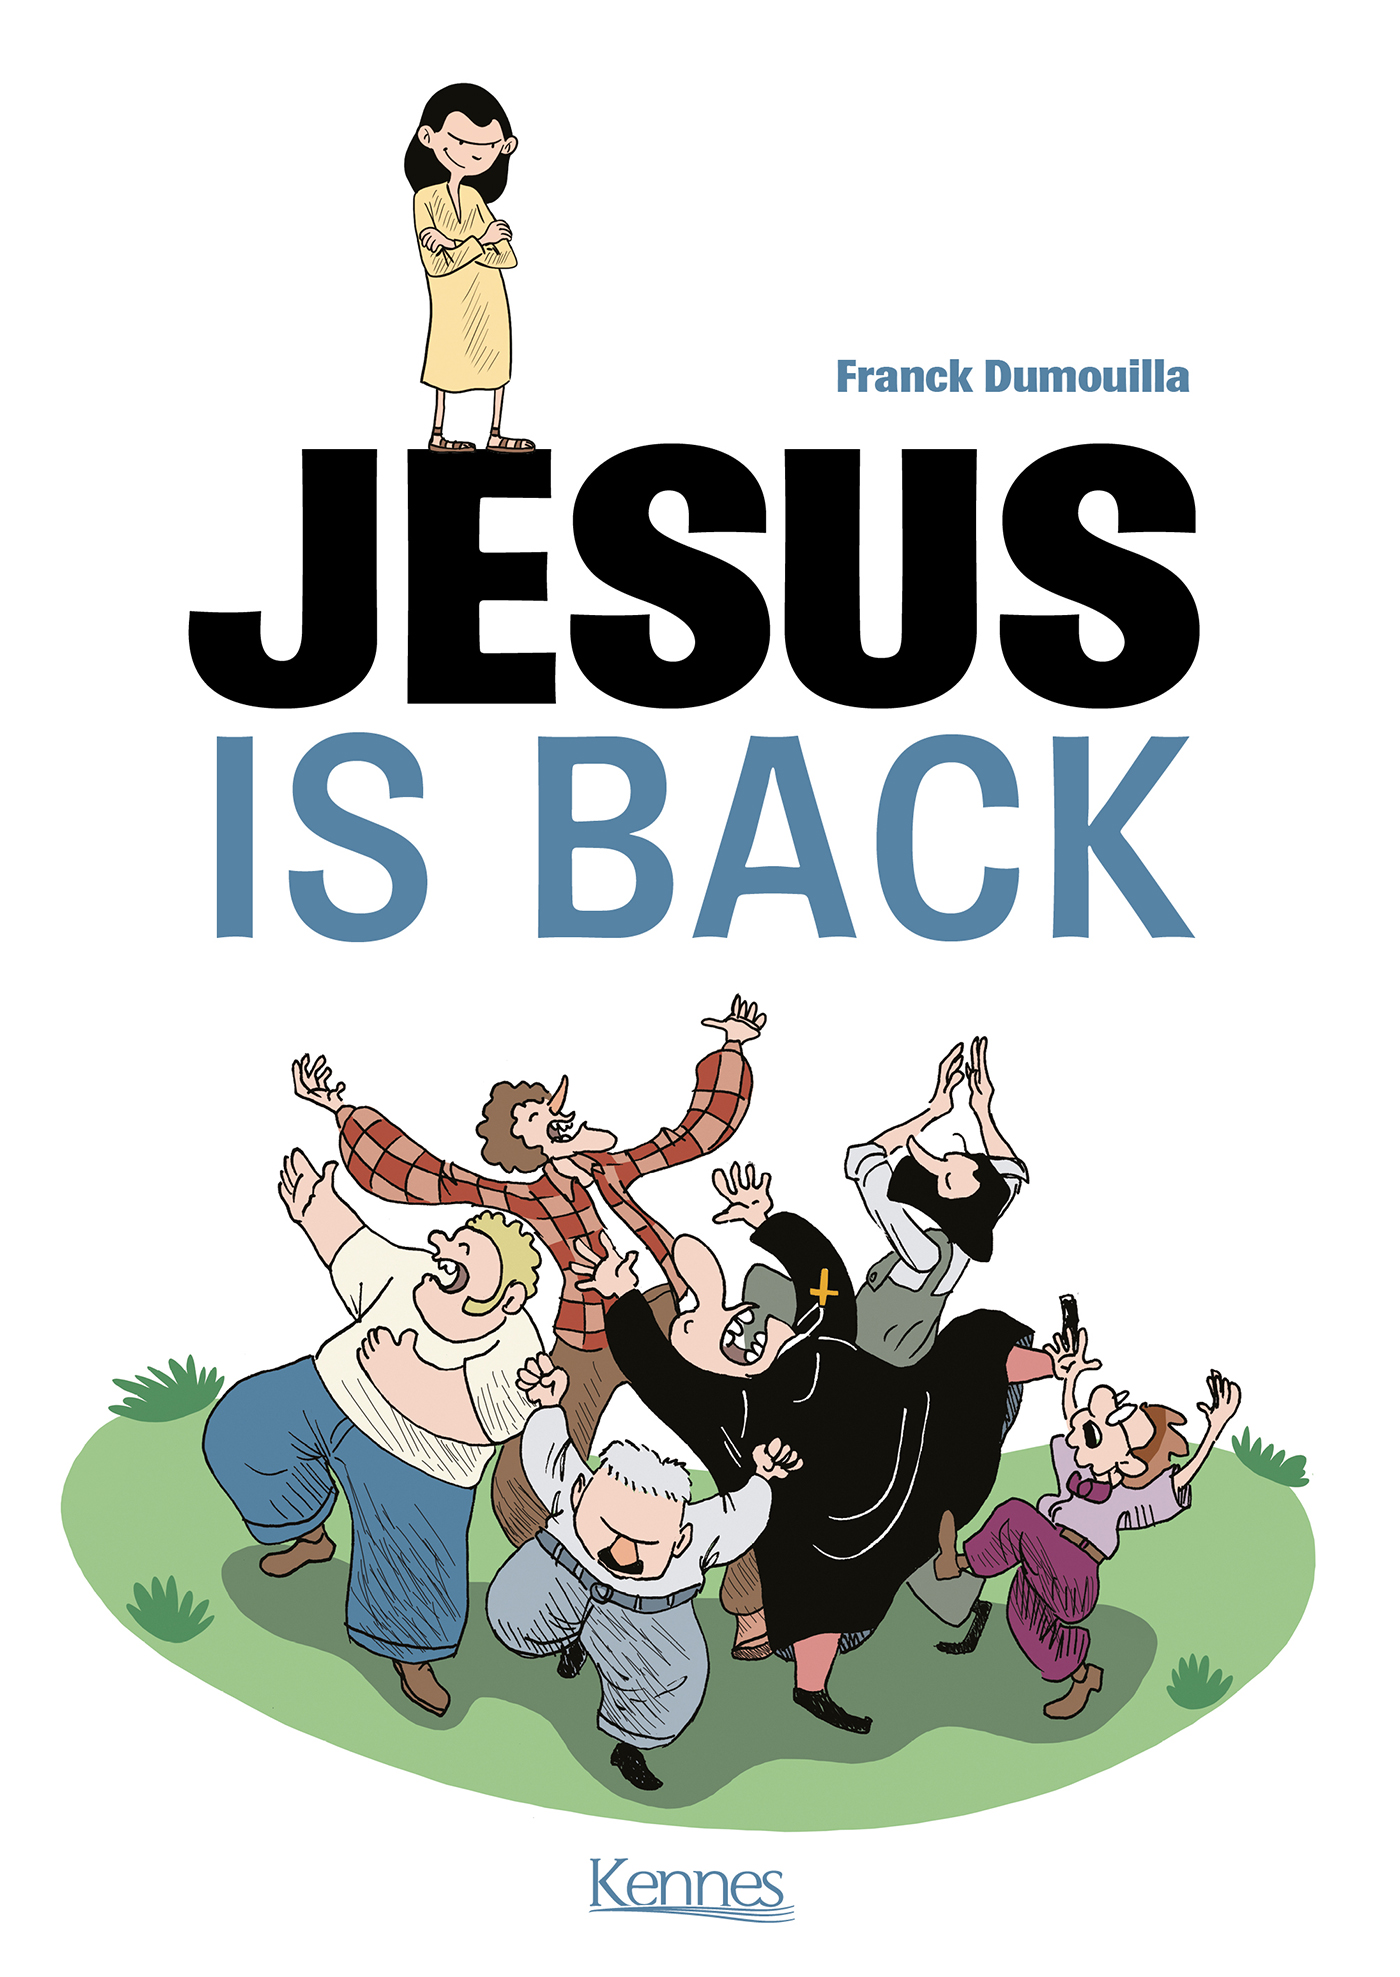 Réflexion autour de la BD "Jesus is back"